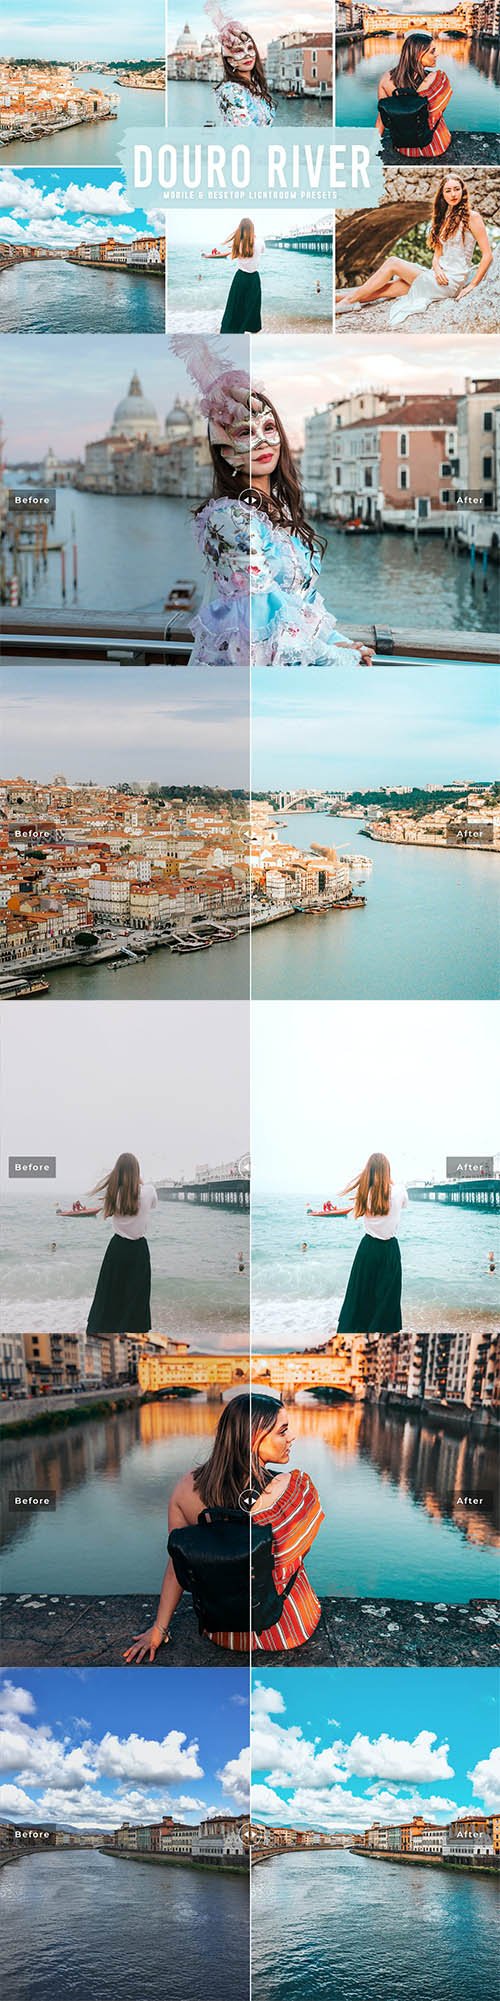 Douro River Mobile & Desktop Lightroom Presets